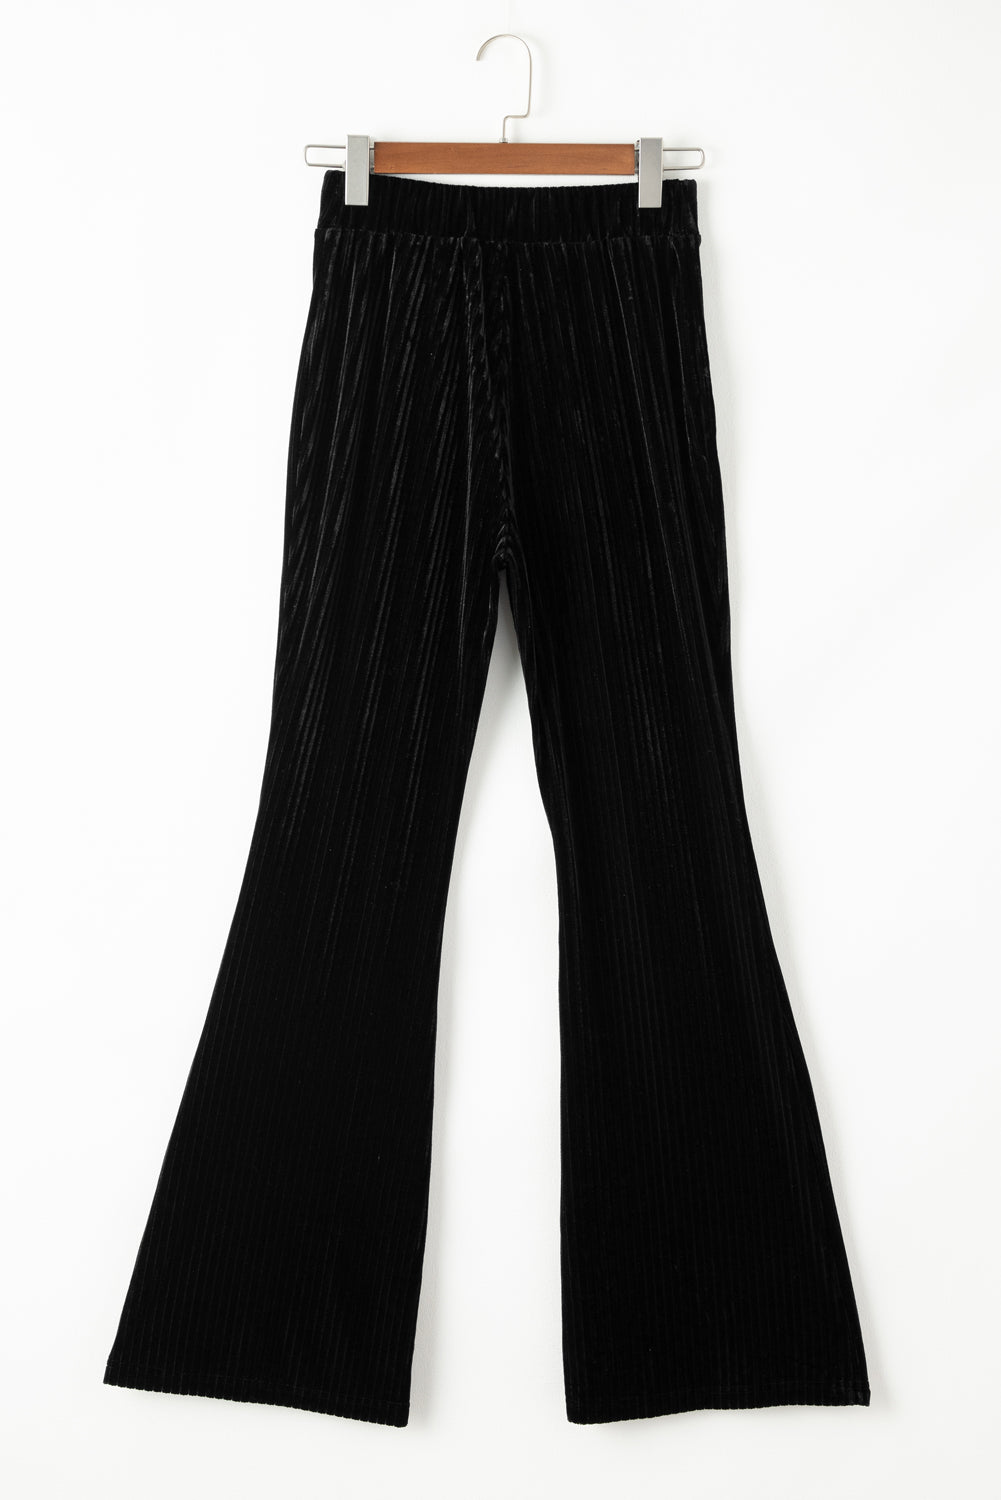 Crne jednobojne hlače od samta s visokim strukom